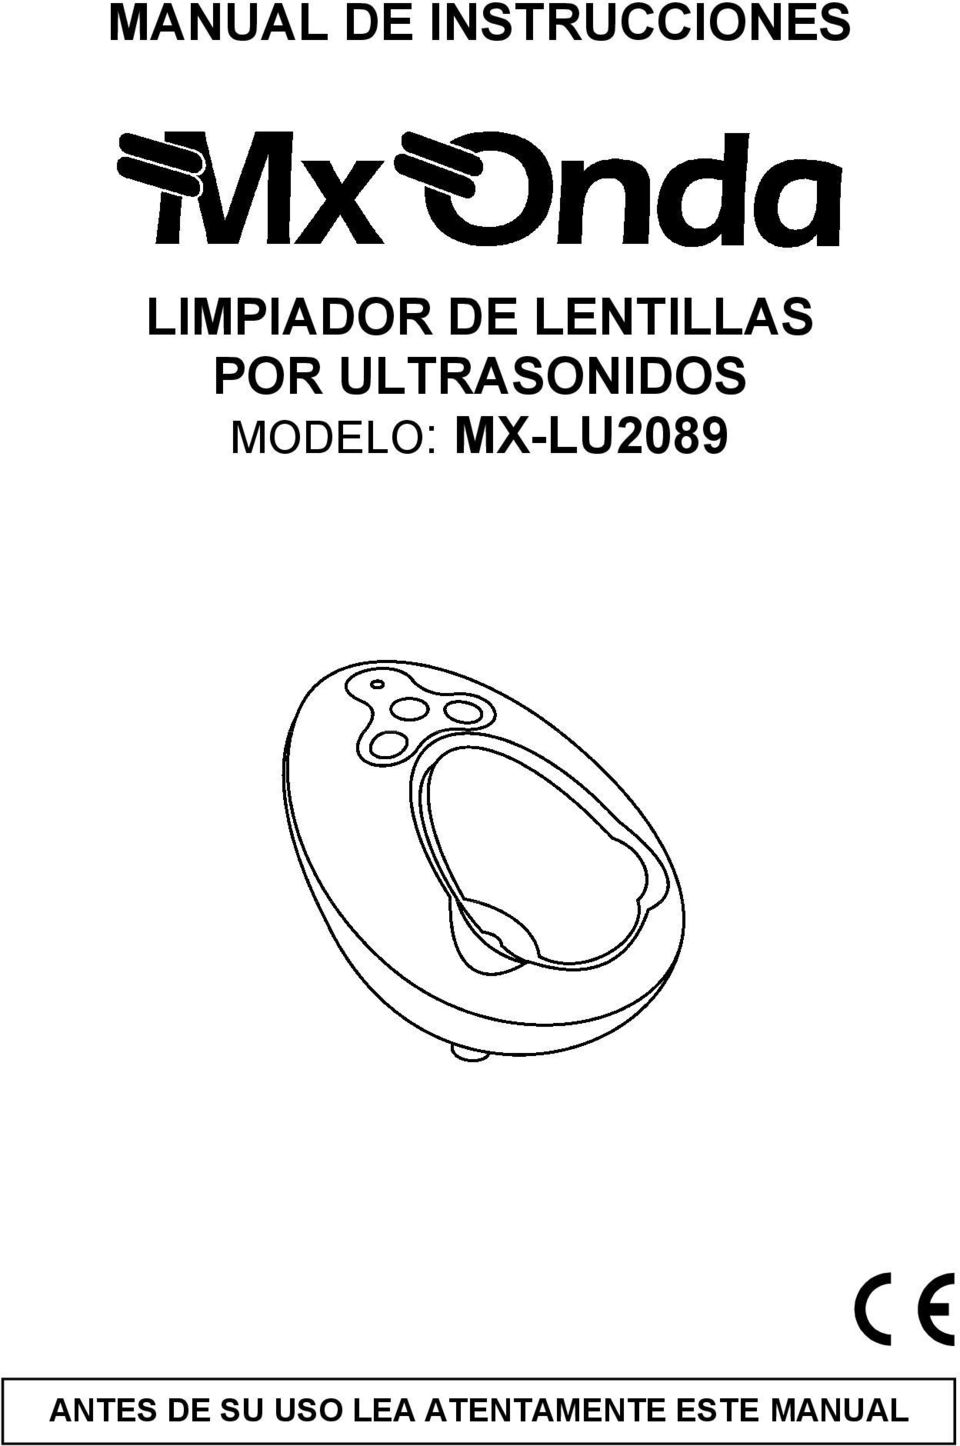 ULTRASONIDOS MODELO: MX-LU2089